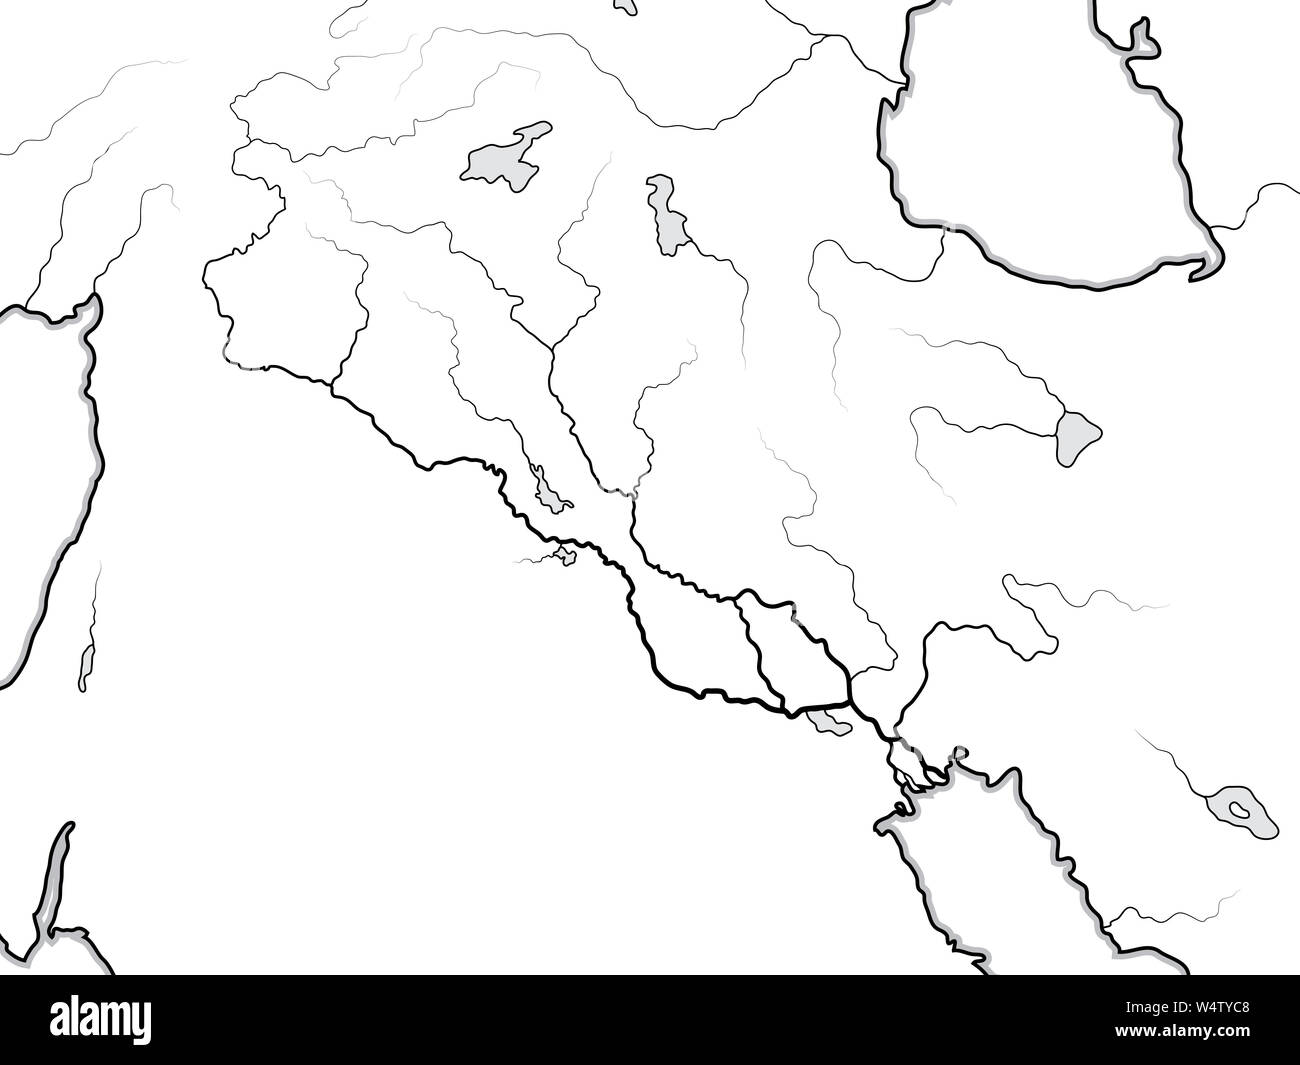 Carte mondiale de la vallée de l'euphrate & TIGRIS : l'Irak, la Syrie, l'Arménie, le Kurdistan, l'Iran, levant, Proche Orient, Moyen Orient, golfe Persique. Carte géographique. Banque D'Images